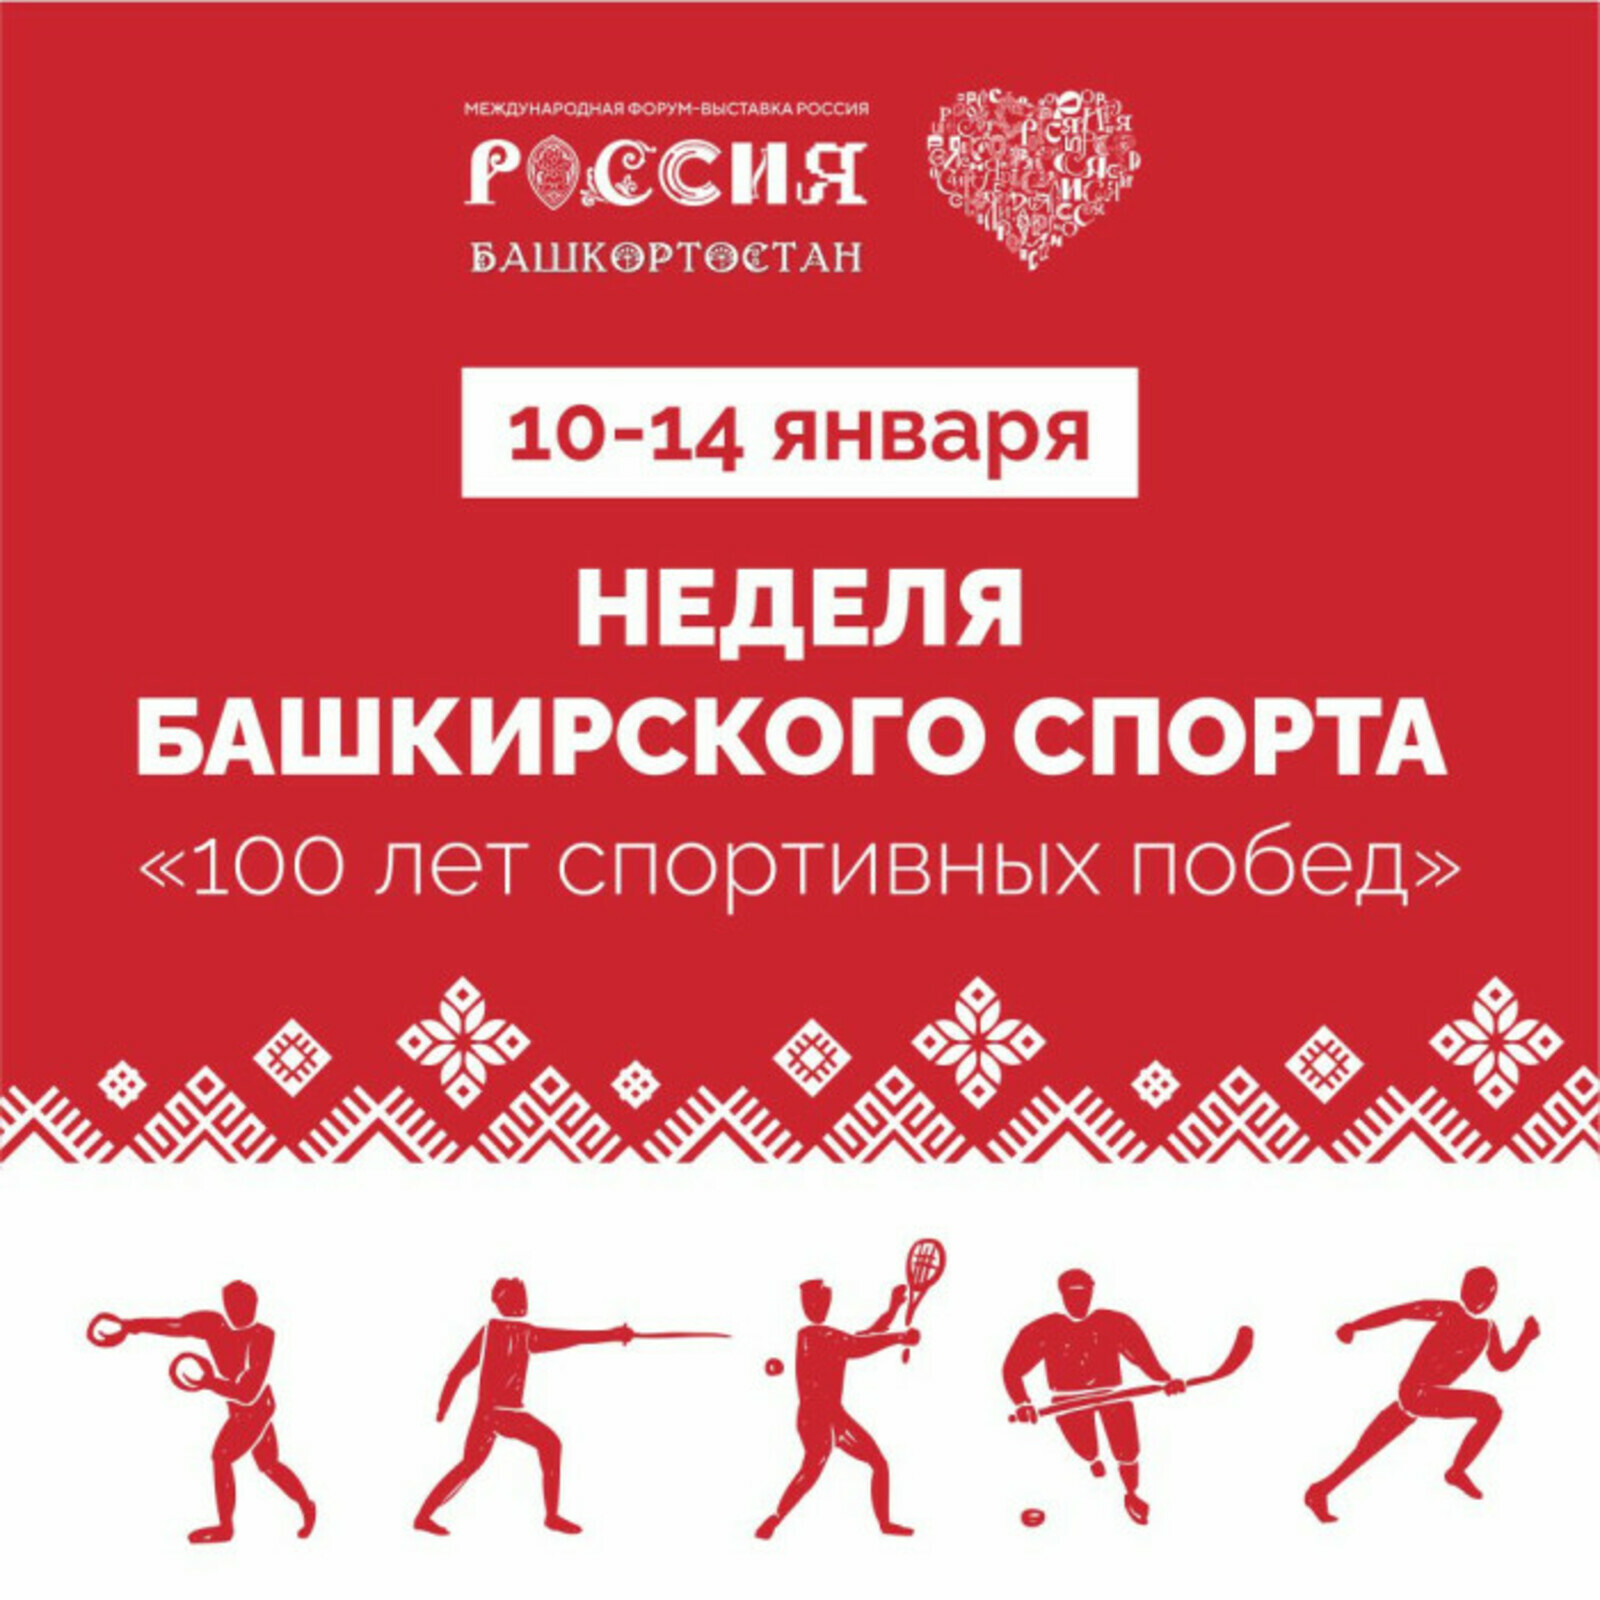 В Москве на ВДНХ идет неделя башкирского спорта «100 лет спортивных побед»